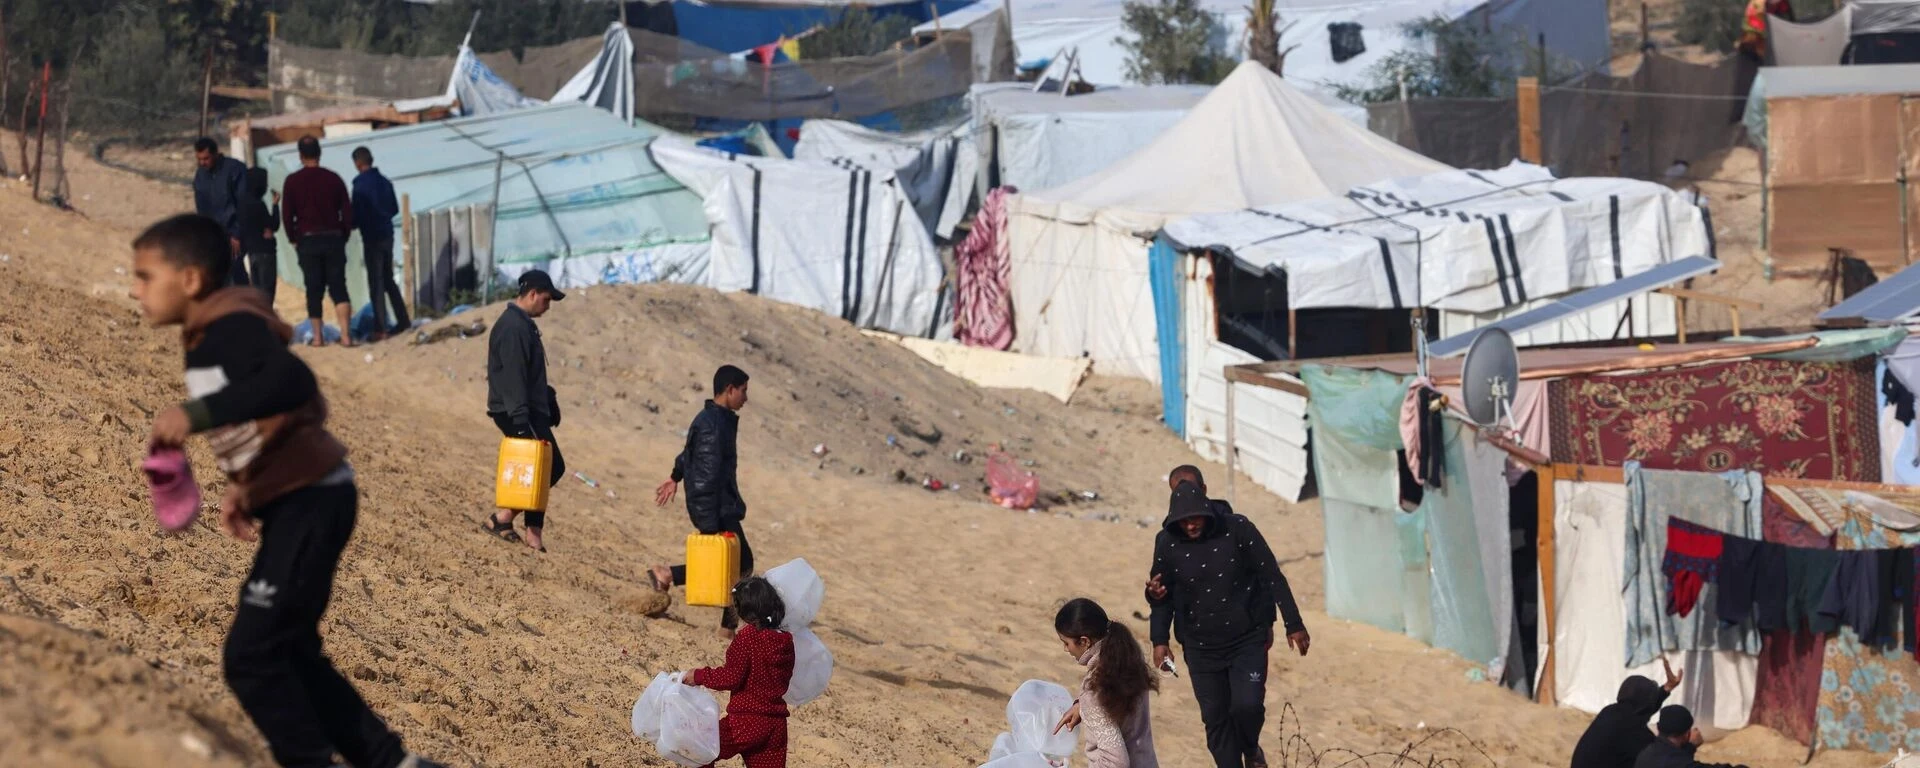 مسؤولون لبنانيون يبحثون مع تركيا وقبرص ملف اللاجئين السوريين